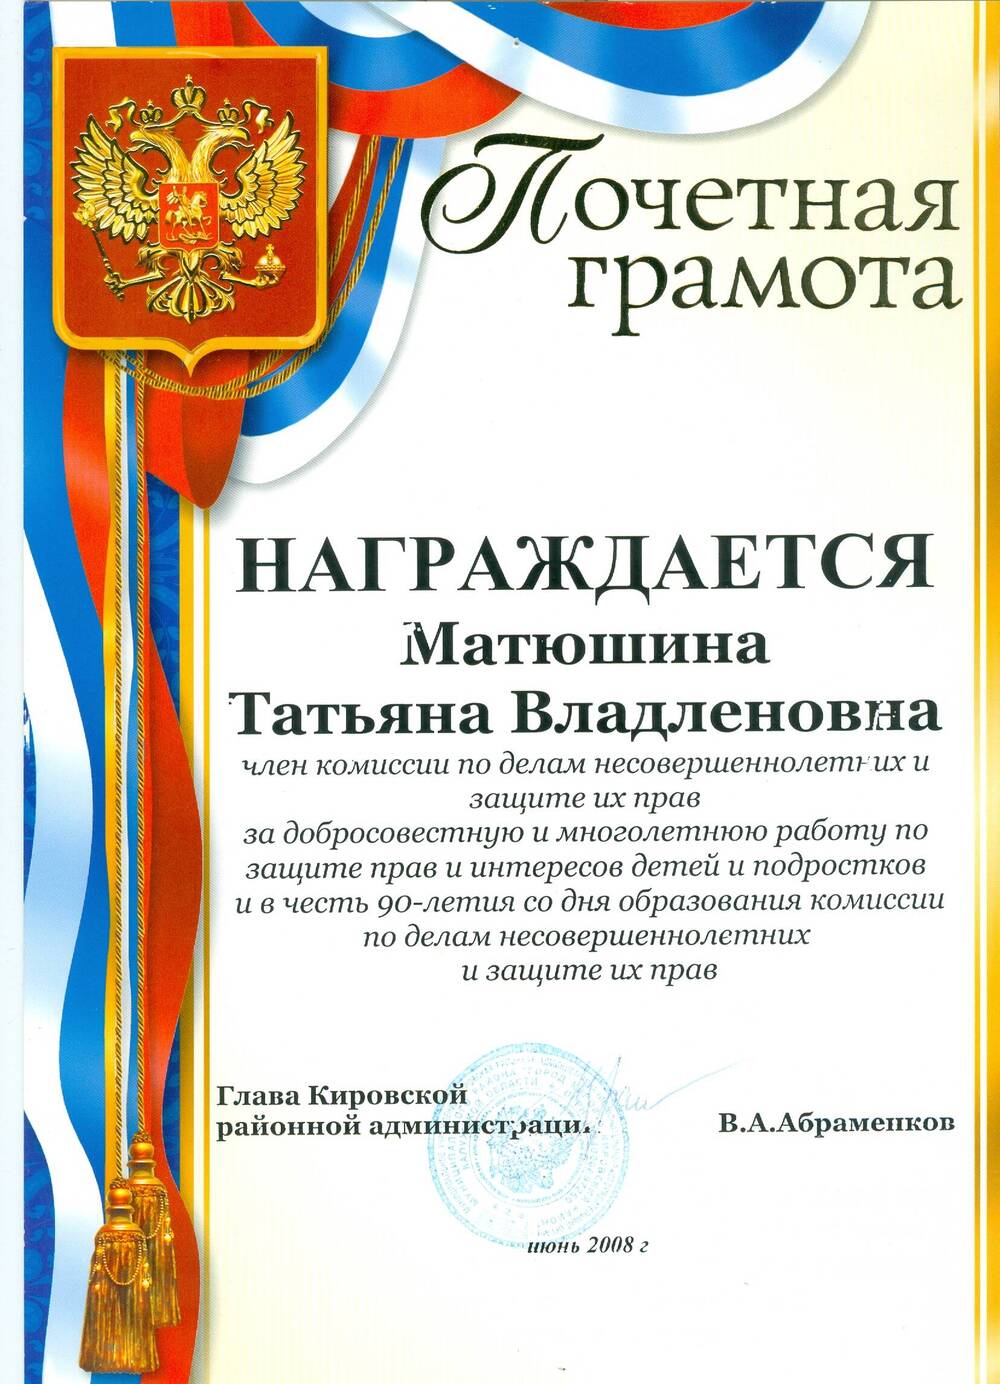 Почетная грамота Матюшиной Т. В. от Кировской районной администрации